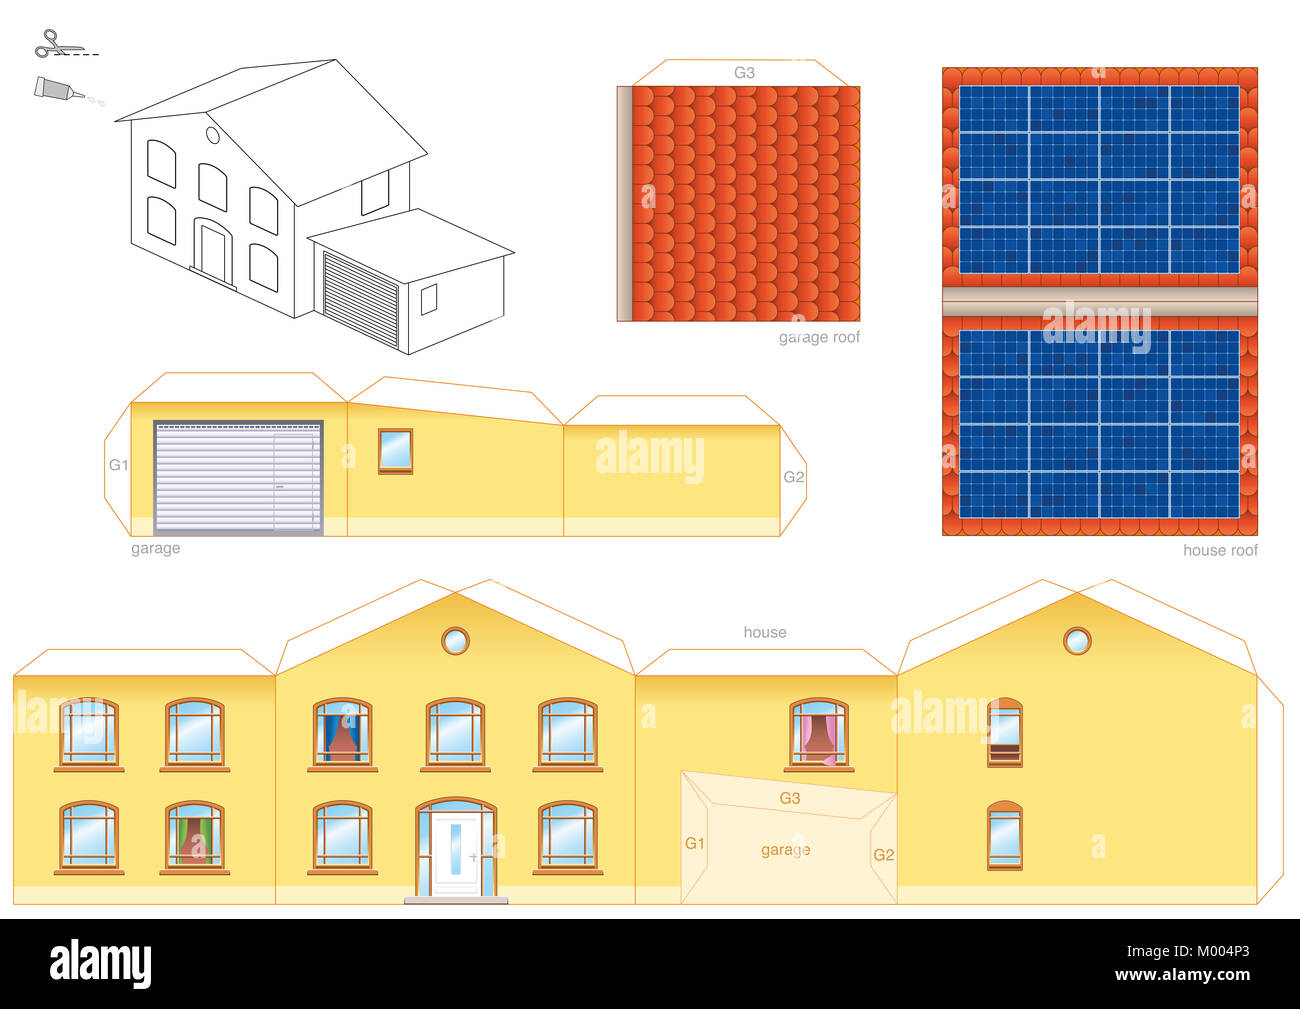 Papercraft modello di una casa con collettori termici solari sul tetto, la tecnologia fotovoltaica - foglio ritagliato di per la realizzazione di un modello in scala house. Foto Stock